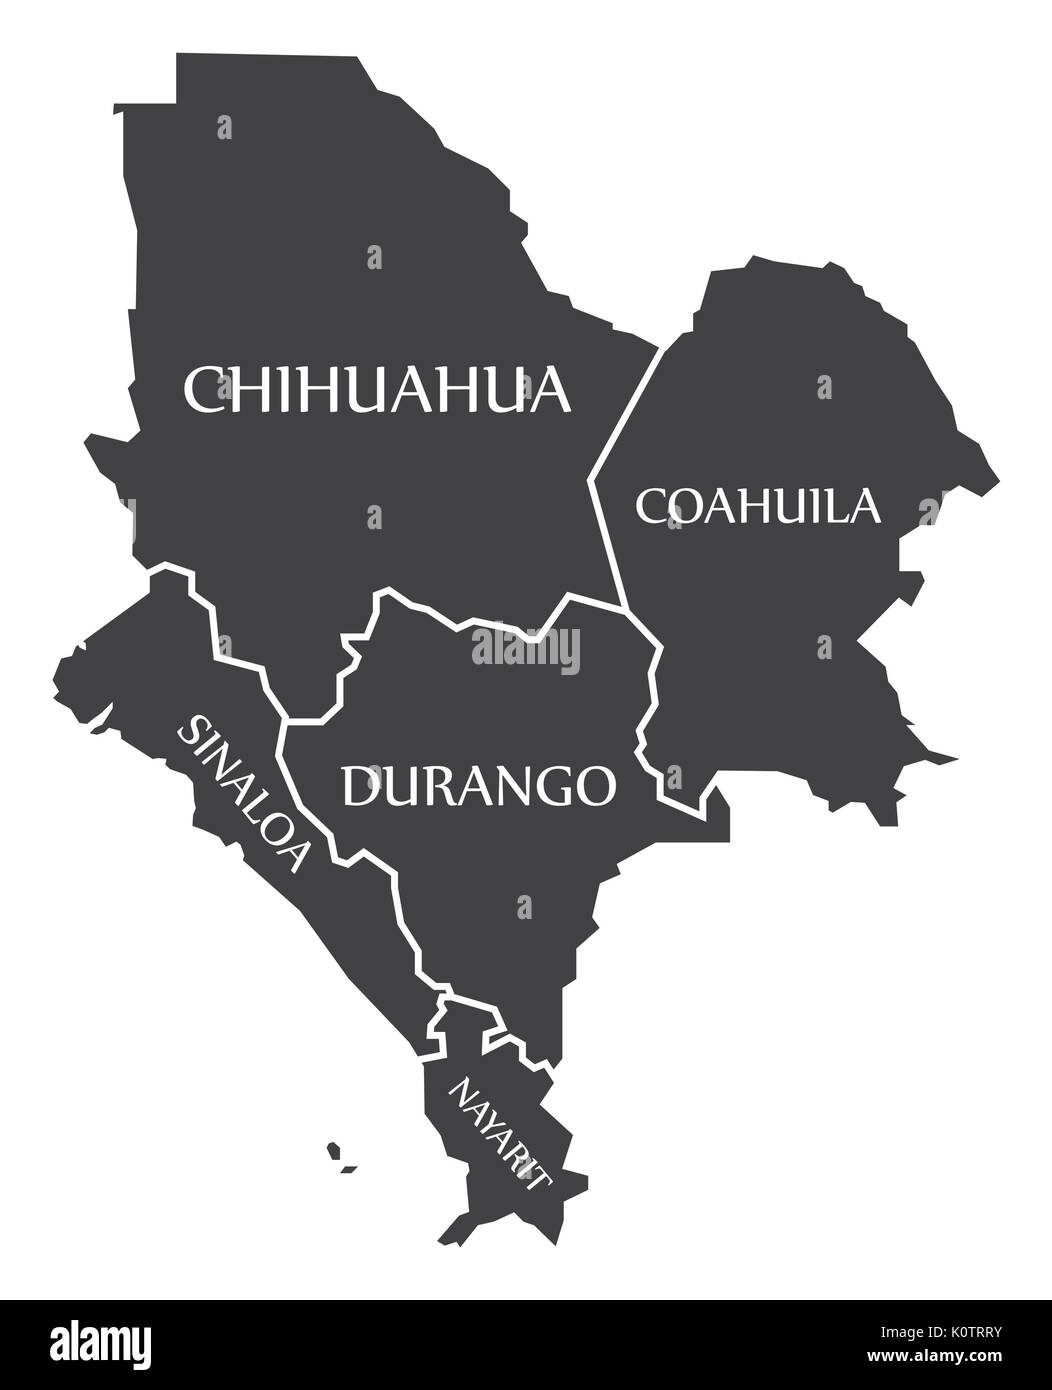 Chihuahua - Coahuila - Sinaloa - Durango - Nayarit Map Mexico illustration Stock Vector